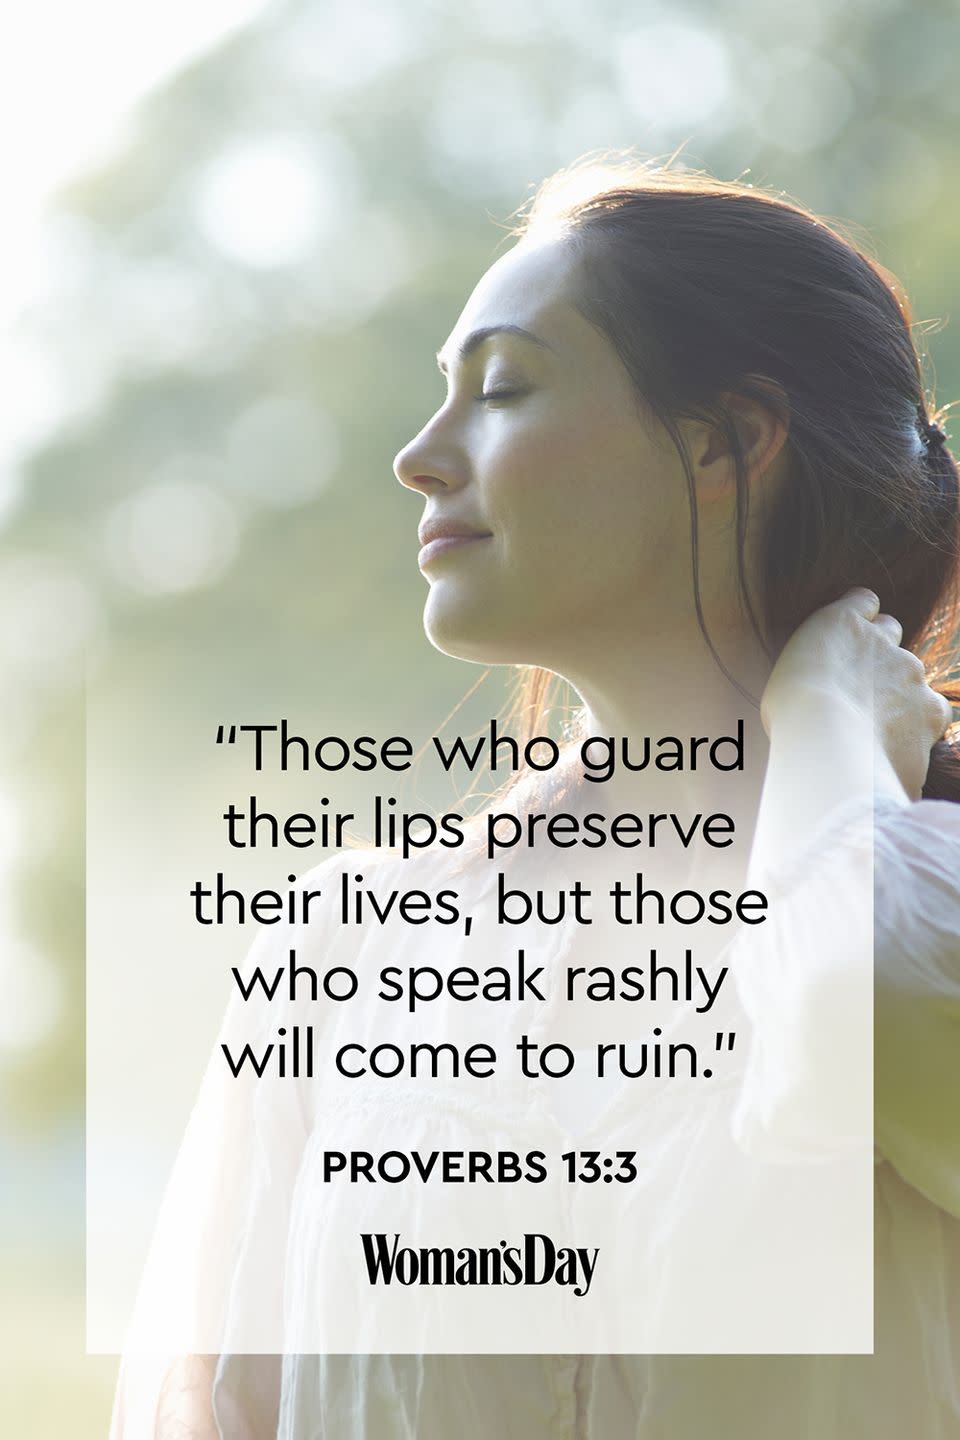 Proverbs 13:3